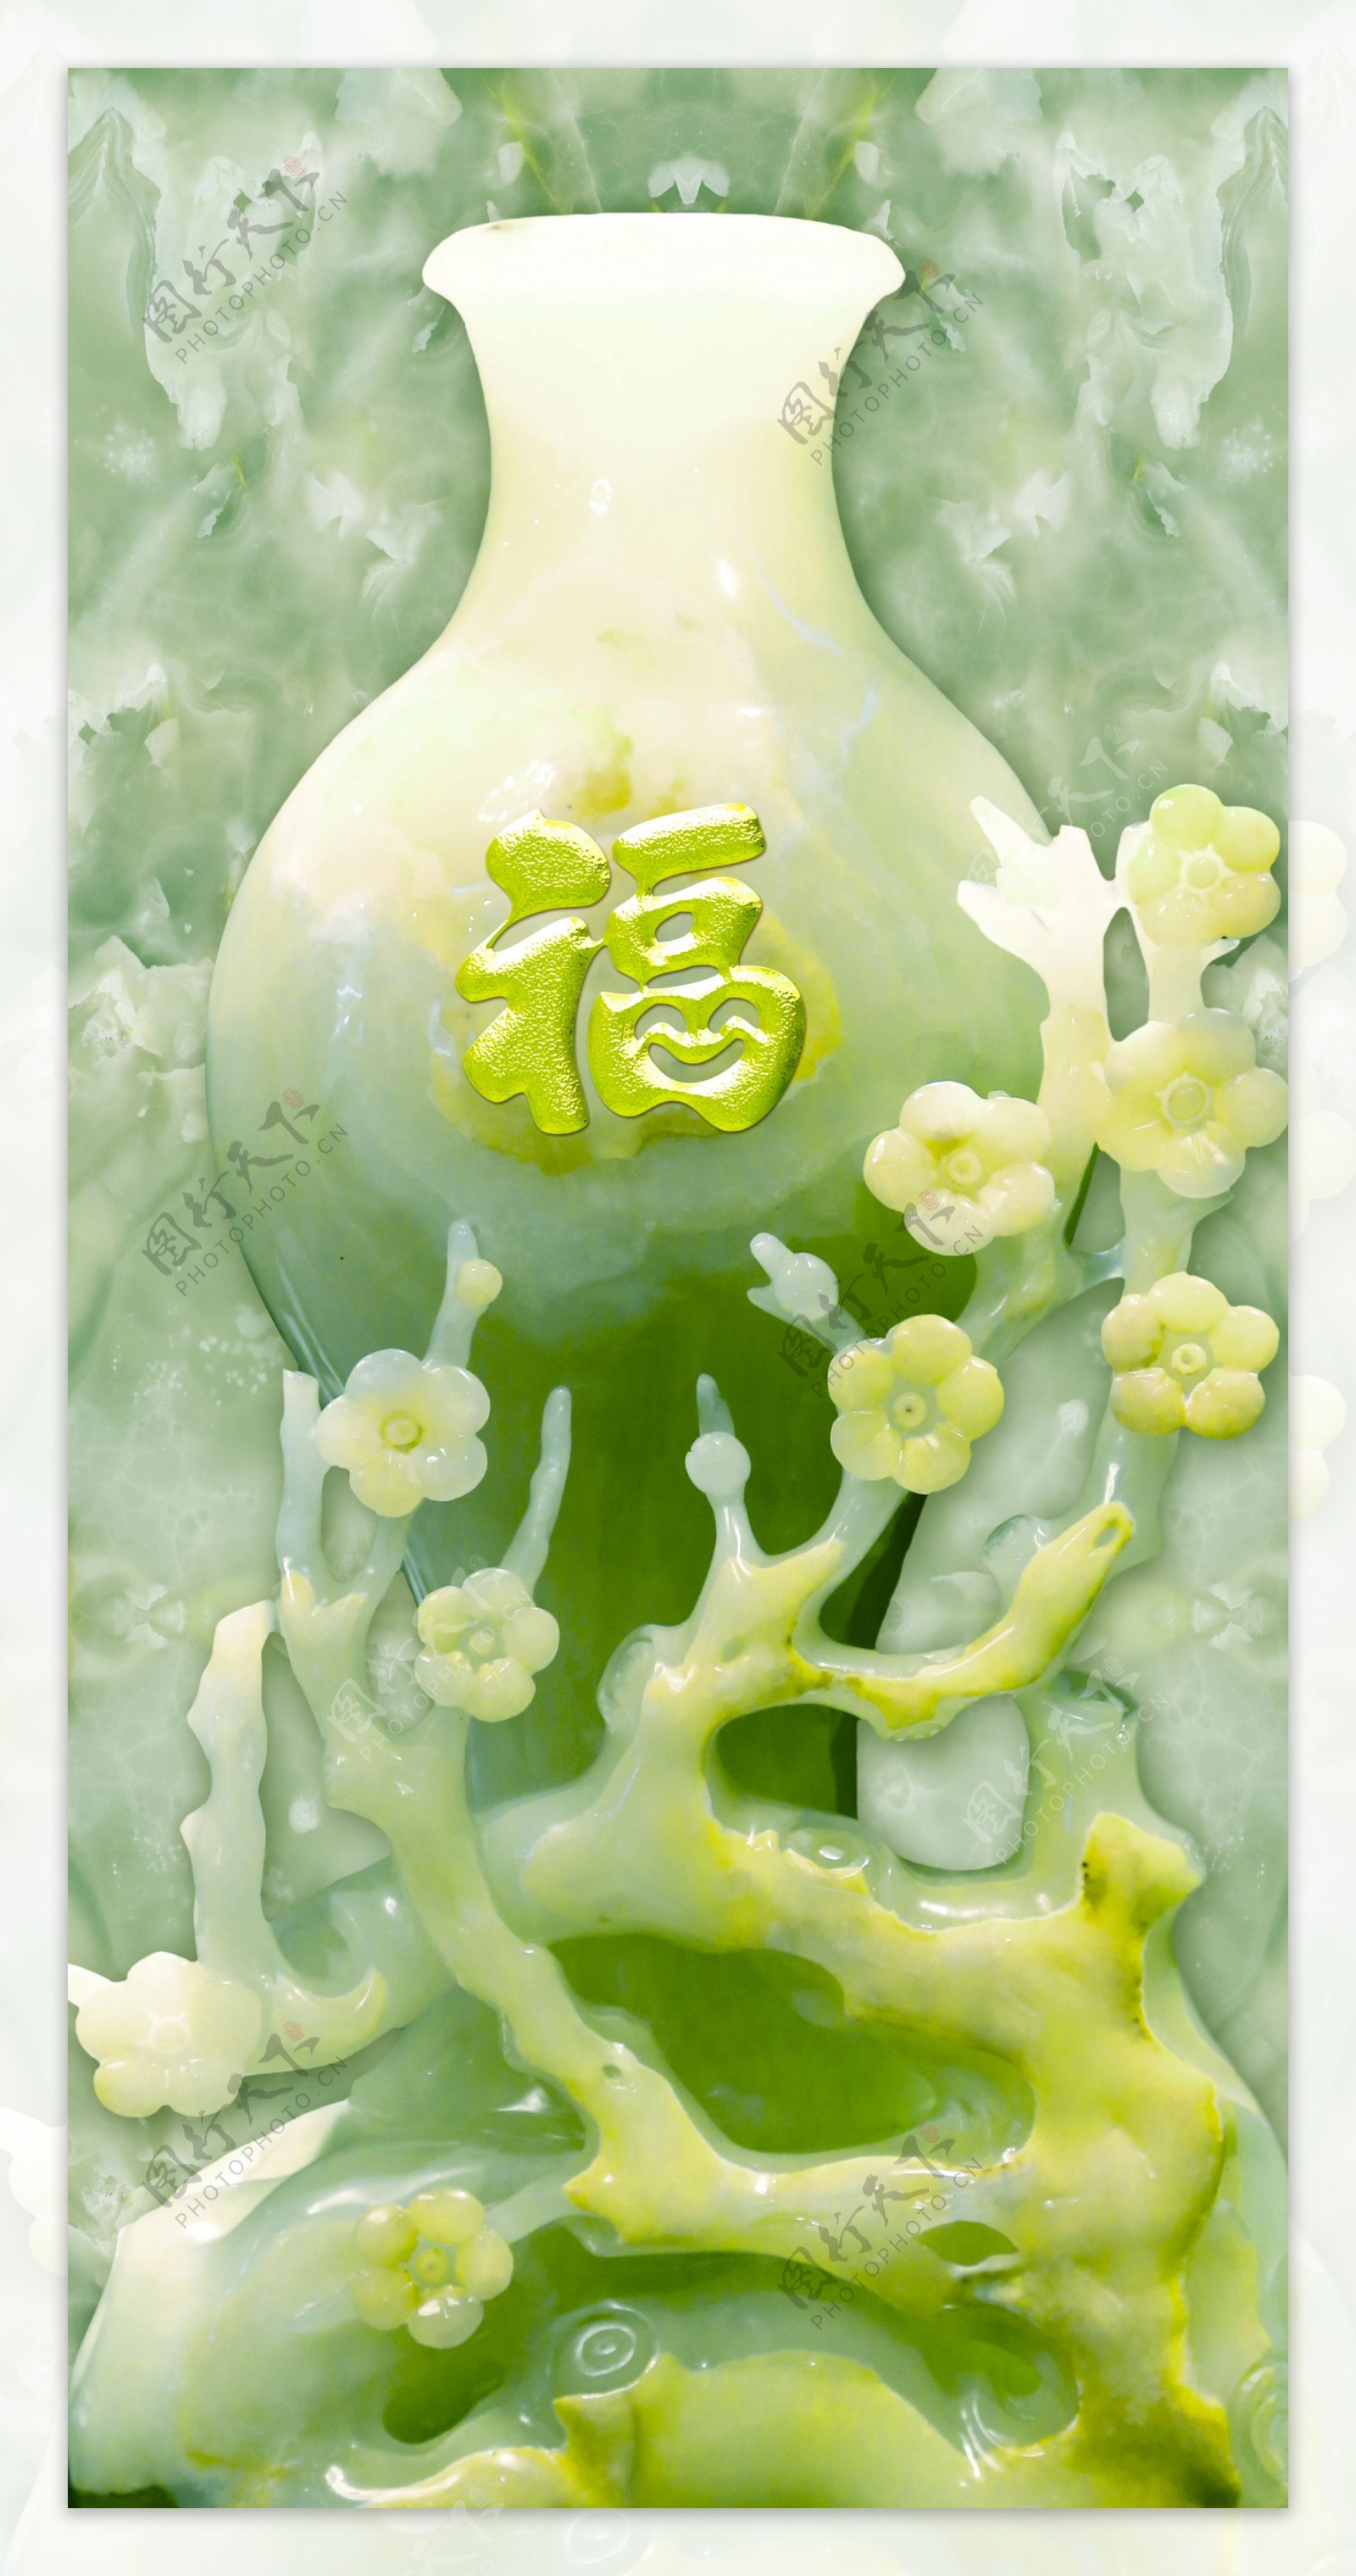 玉雕中国福浮雕玄关壁画图片